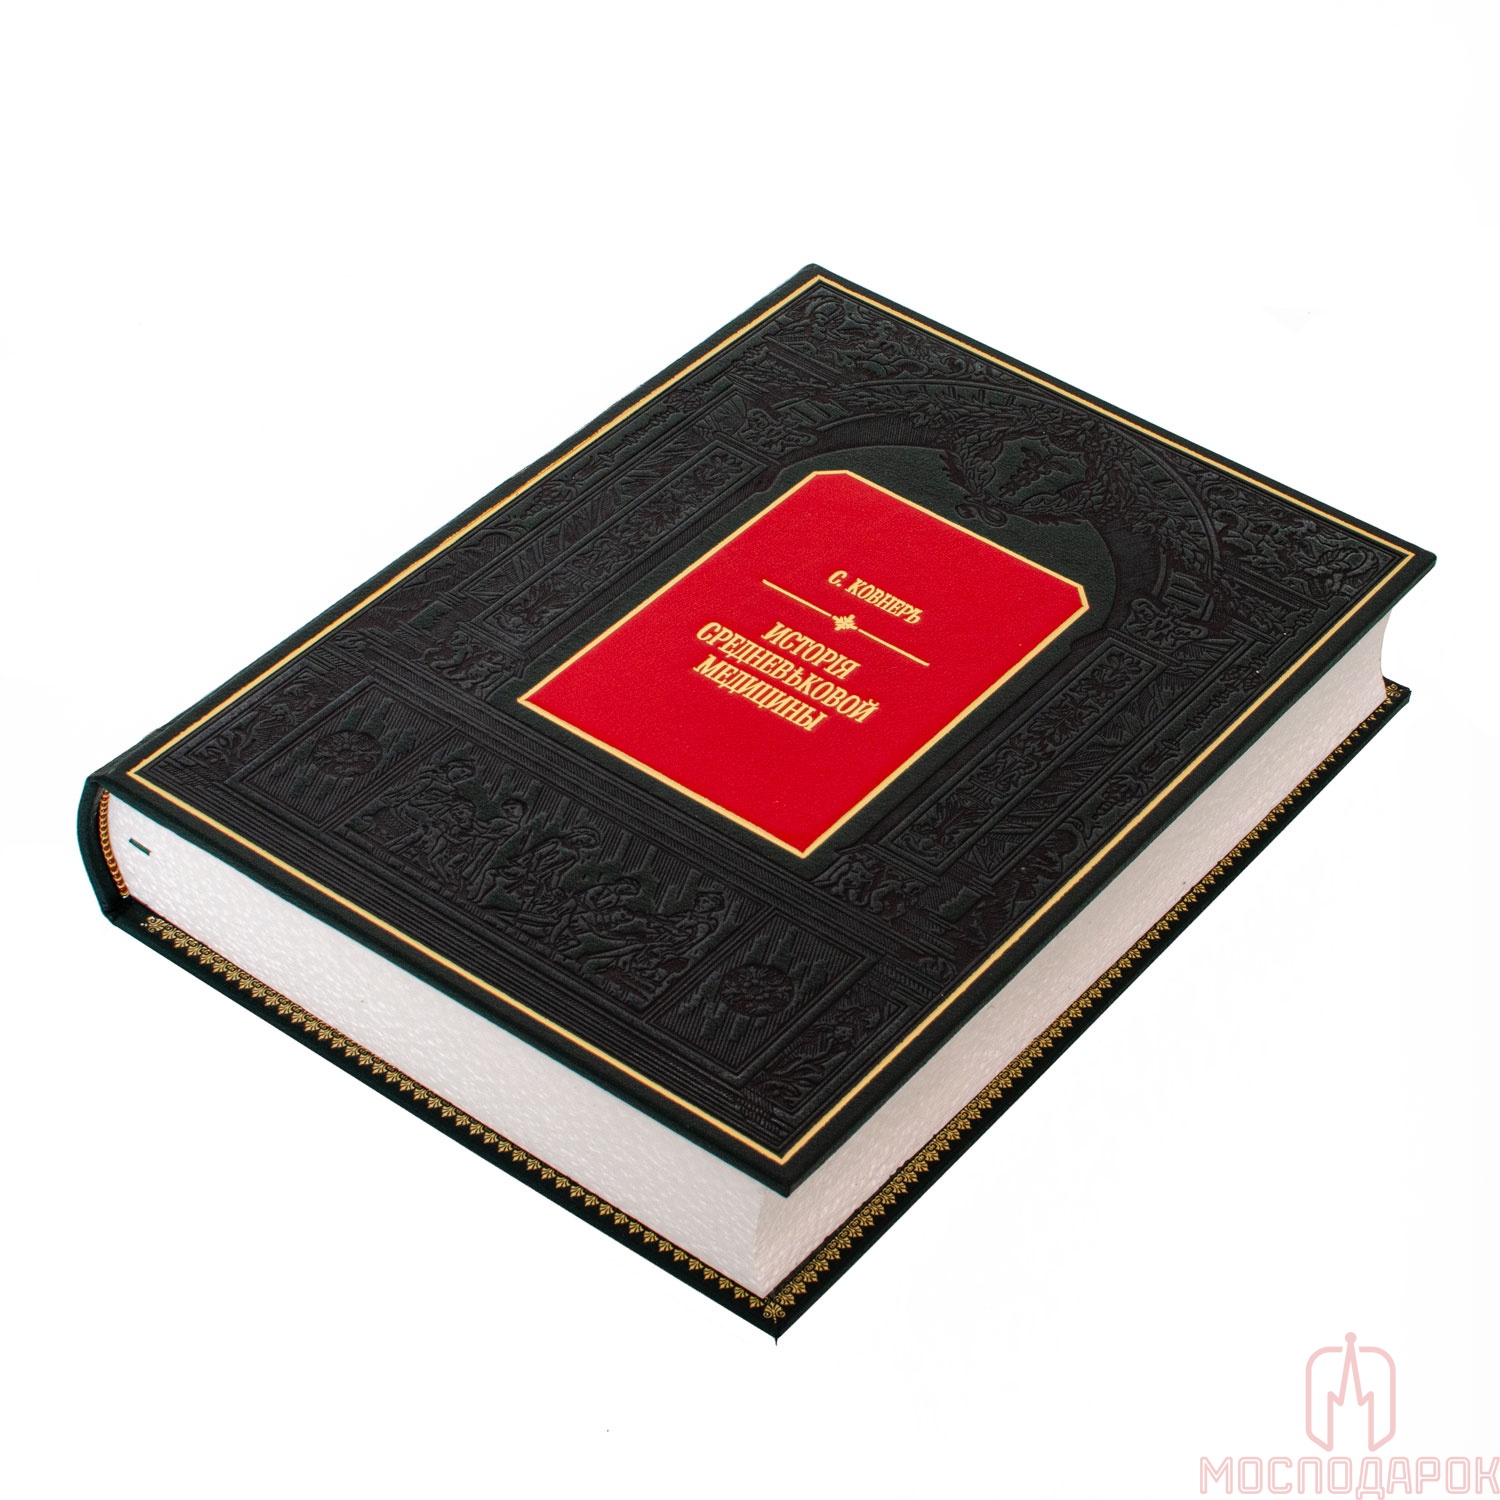 Книга подарочная "История средневековой медицины" - артикул: 207134 | Мосподарок 